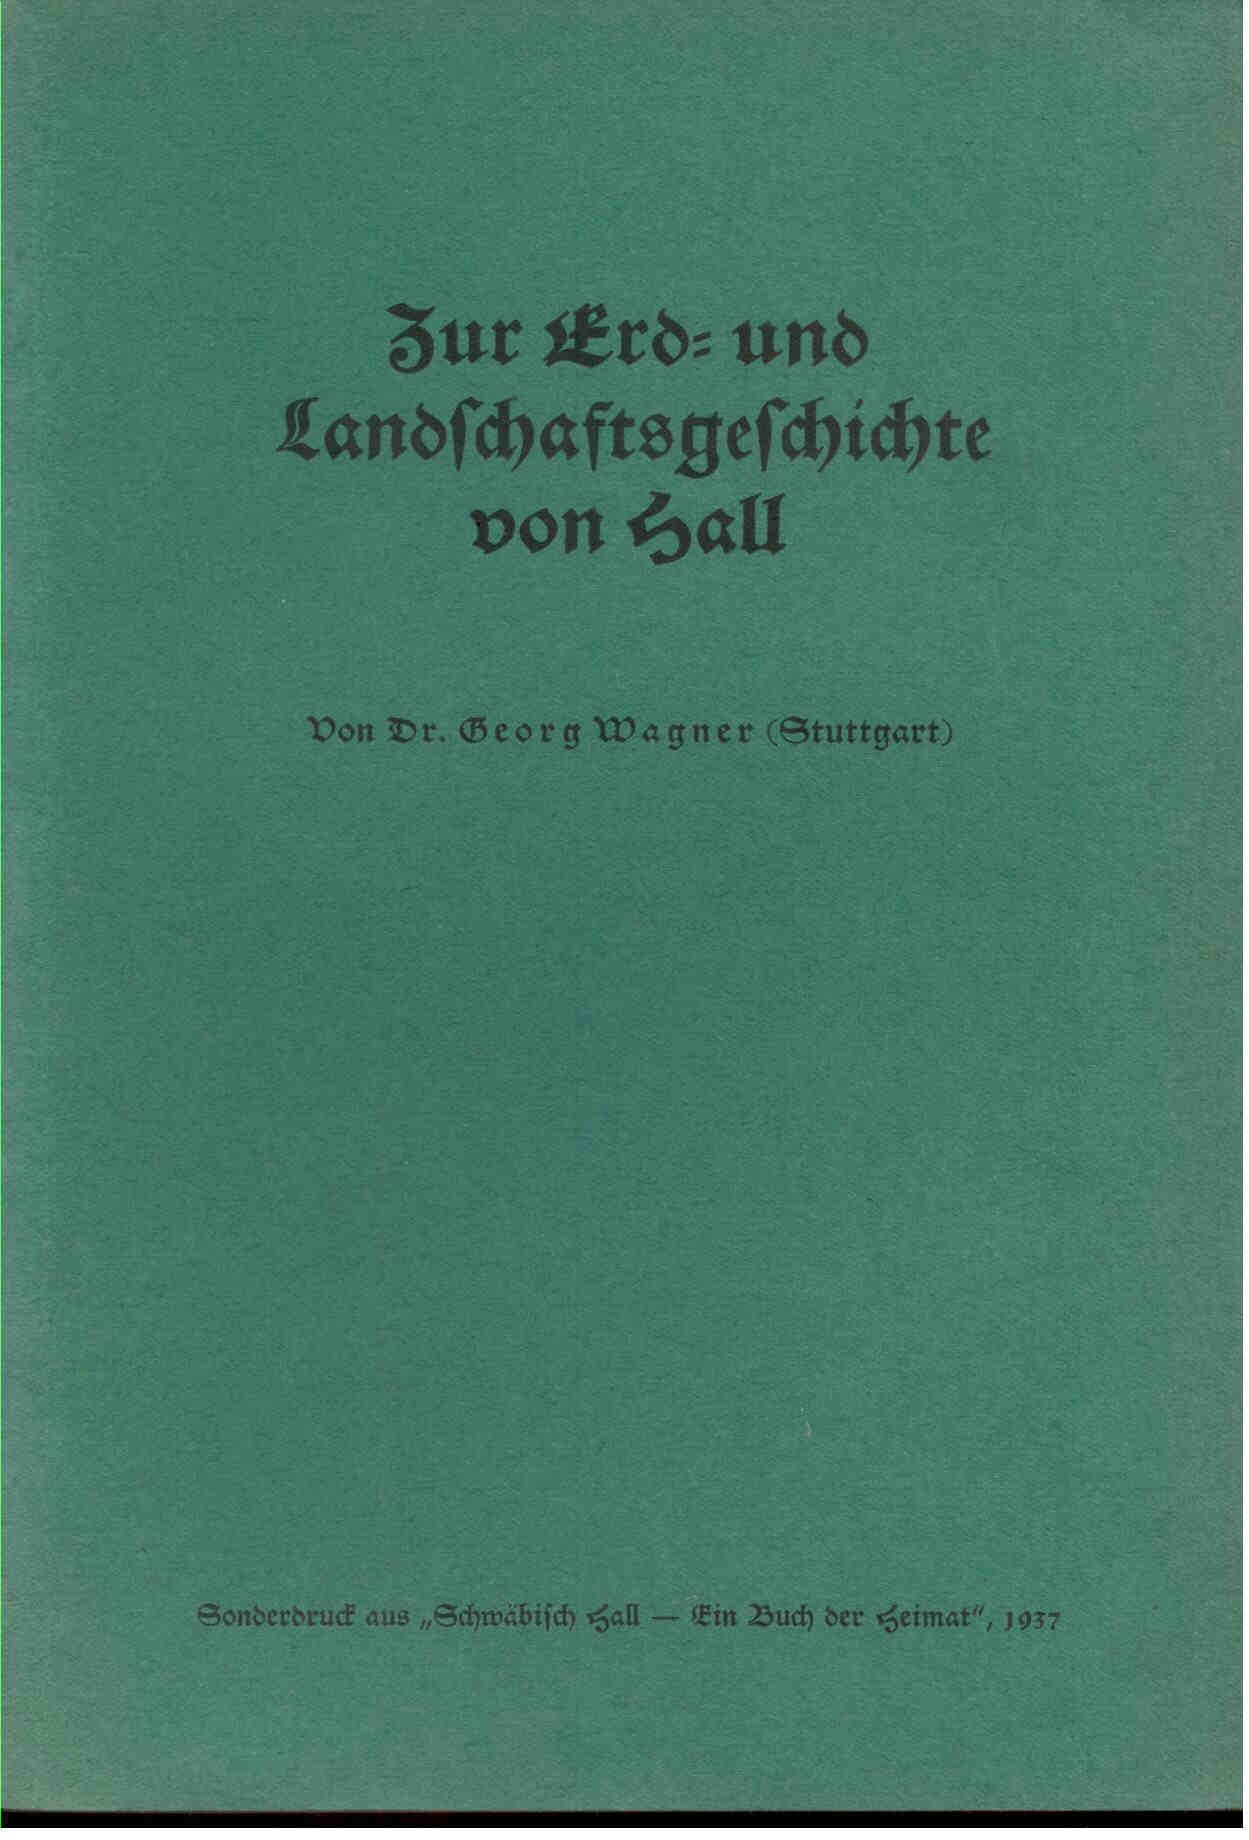 Wagner, G.: Zur Erd- und Landschaftsgeschichte von Hall.